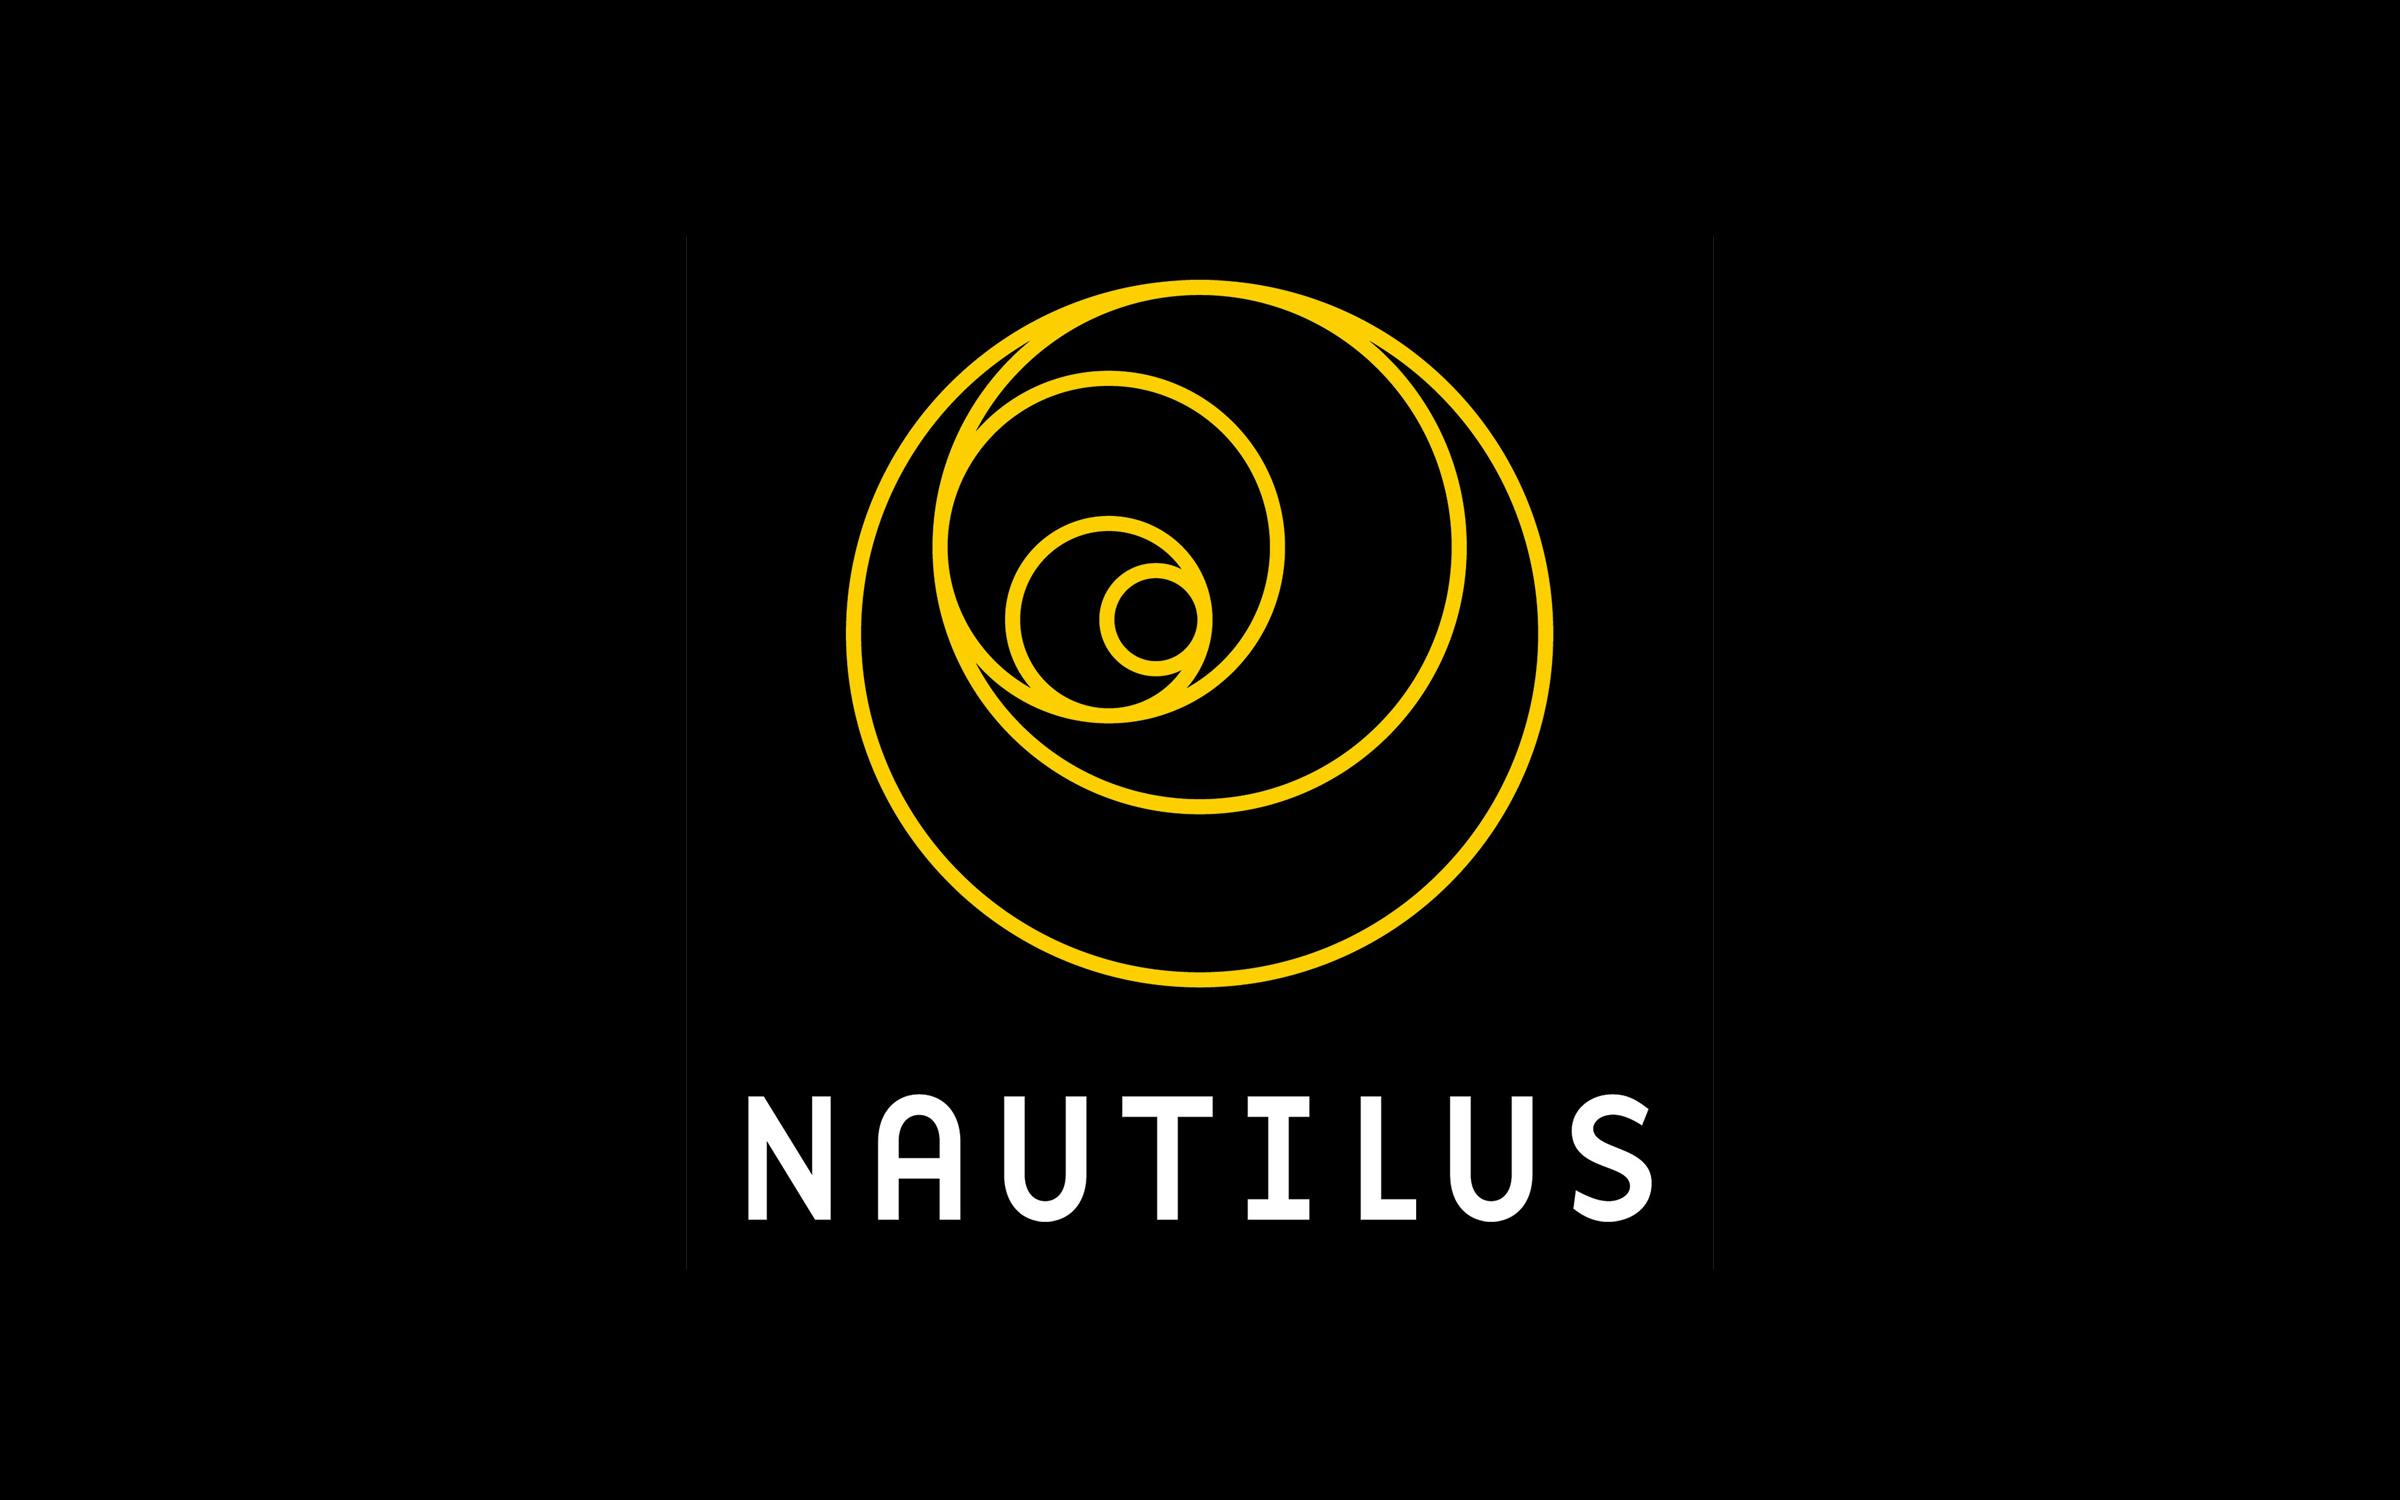 (c) Nautil.us